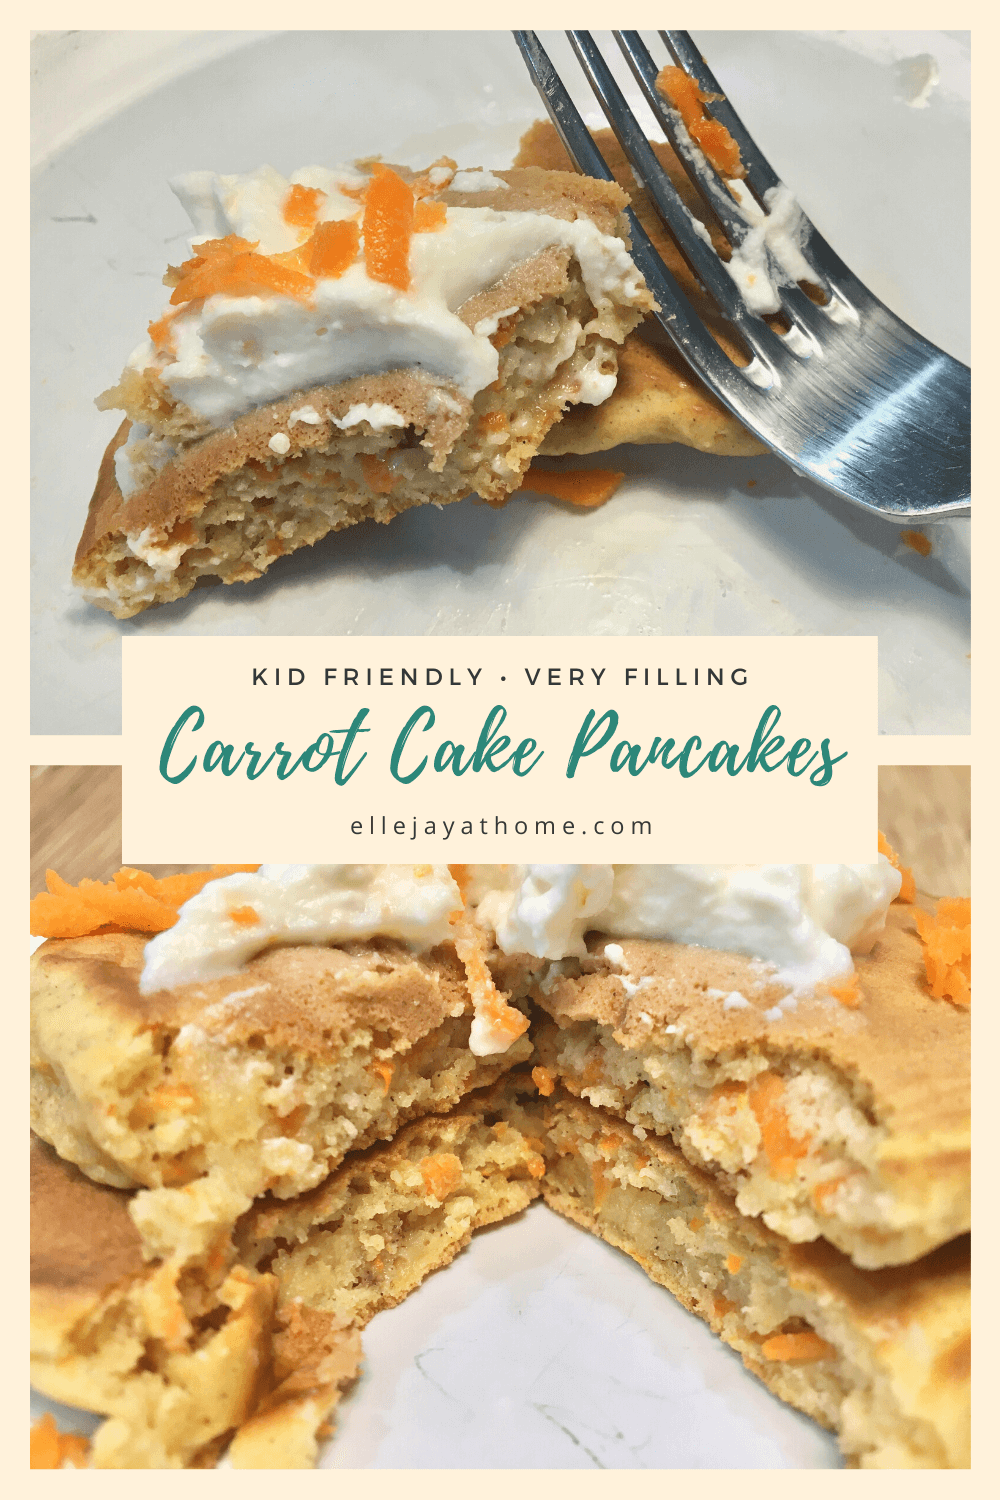 Carrot Cake Pancakes for Easter Brunch - Elle Jay at Home